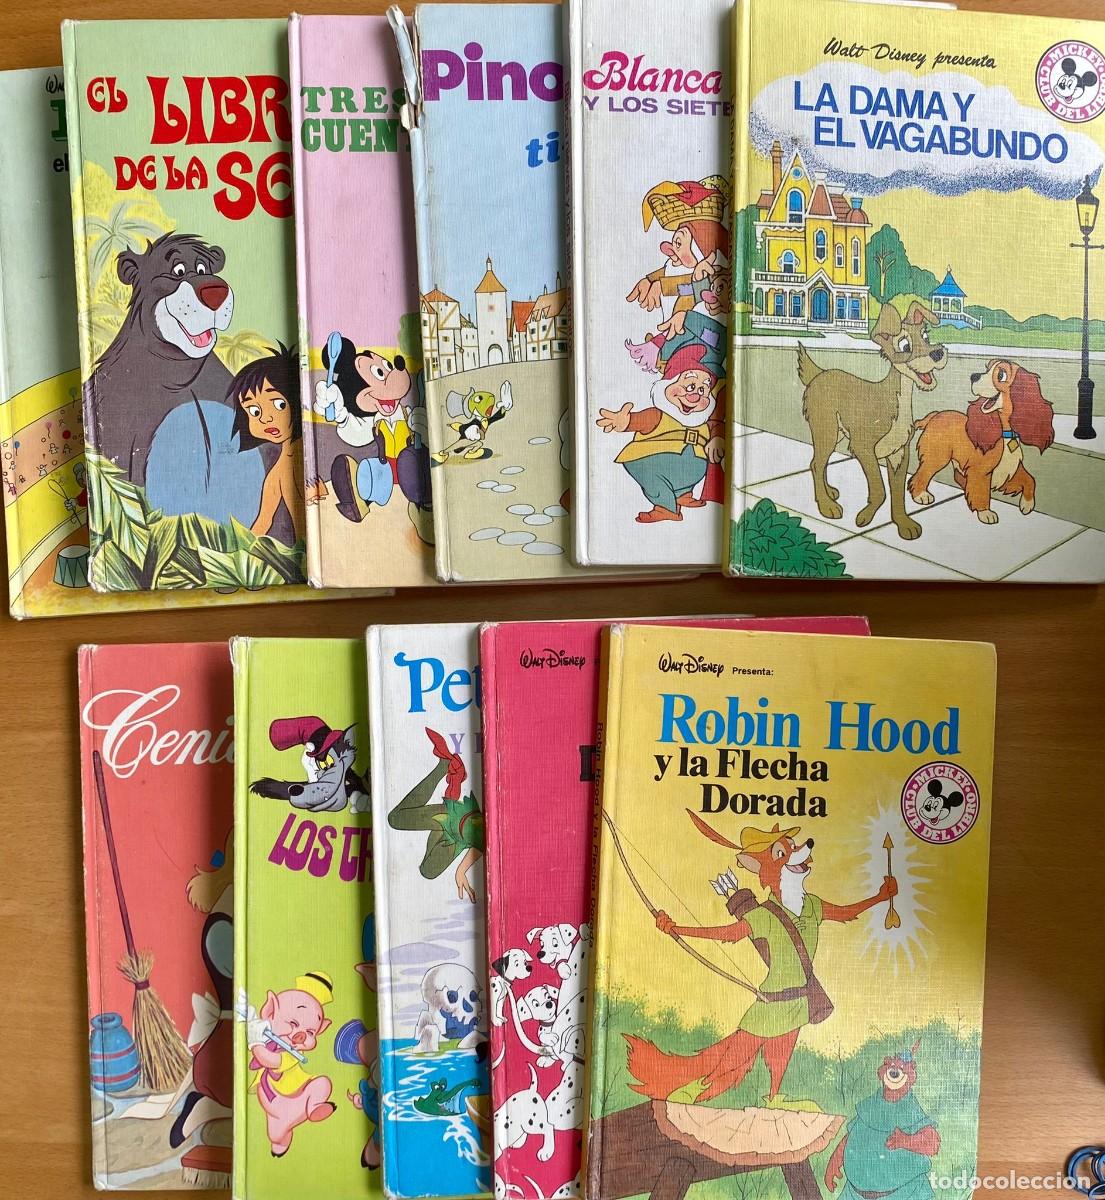 pixar - 5 libros disney club del libro - salvat - Acquista Libri usati di  fiabe e racconti per bambini su todocoleccion